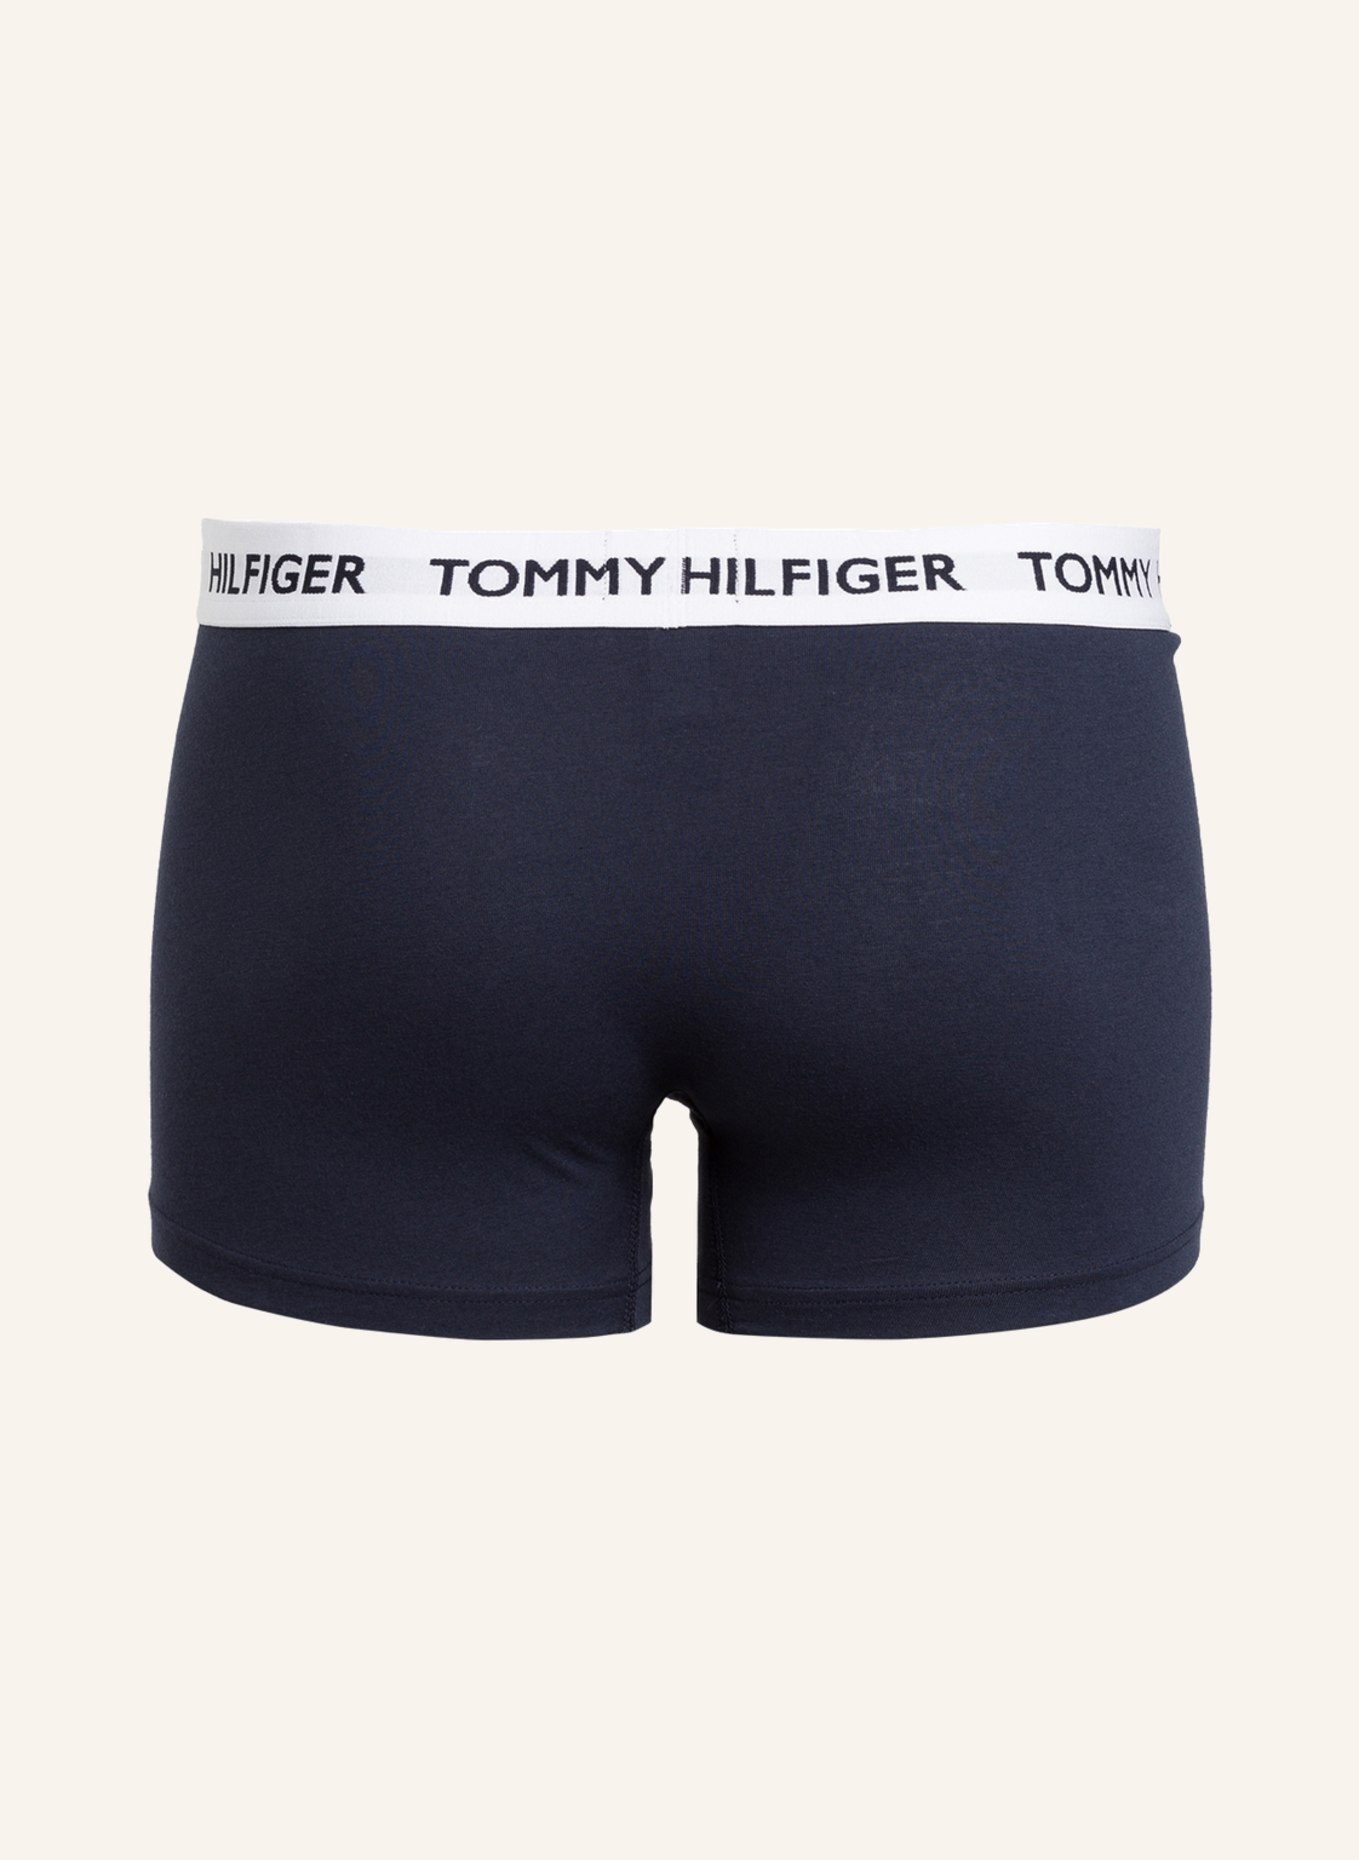 TOMMY HILFIGER Boxer shorts, Color: BLUE (Image 2)